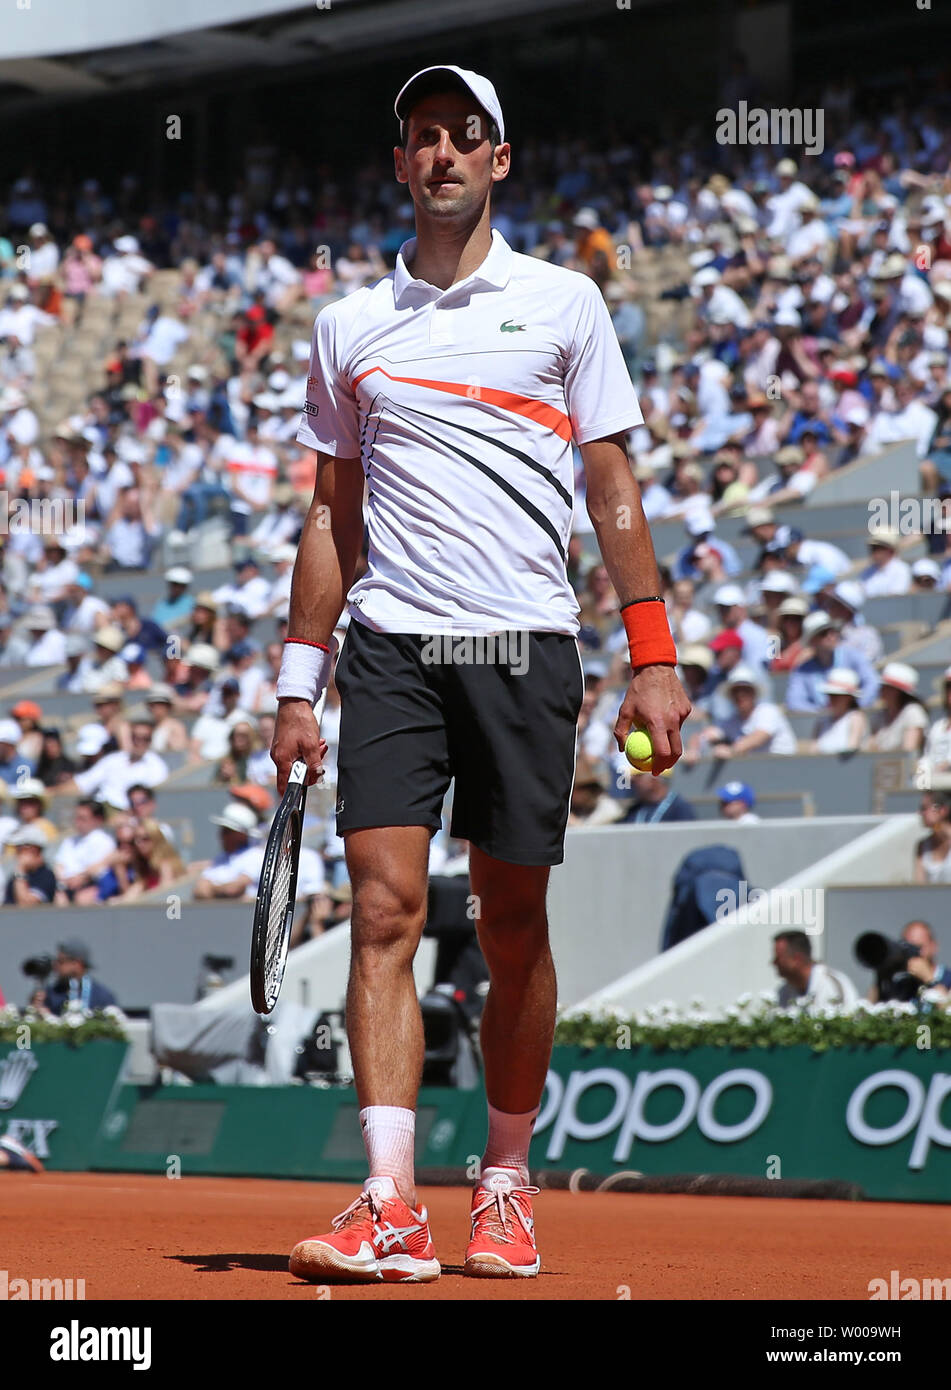 Novak Djokovic La Serbie marque une pause au cours de son Open de France men's troisième match contre l'Italie de Salvatore Caruso à Roland Garros à Paris le 1 juin 2019. Djokovic bat Salvatore, 6-3, 6-3 à 6-2 l'avance à la quatrième ronde. Photo de David Silpa/UPI Banque D'Images